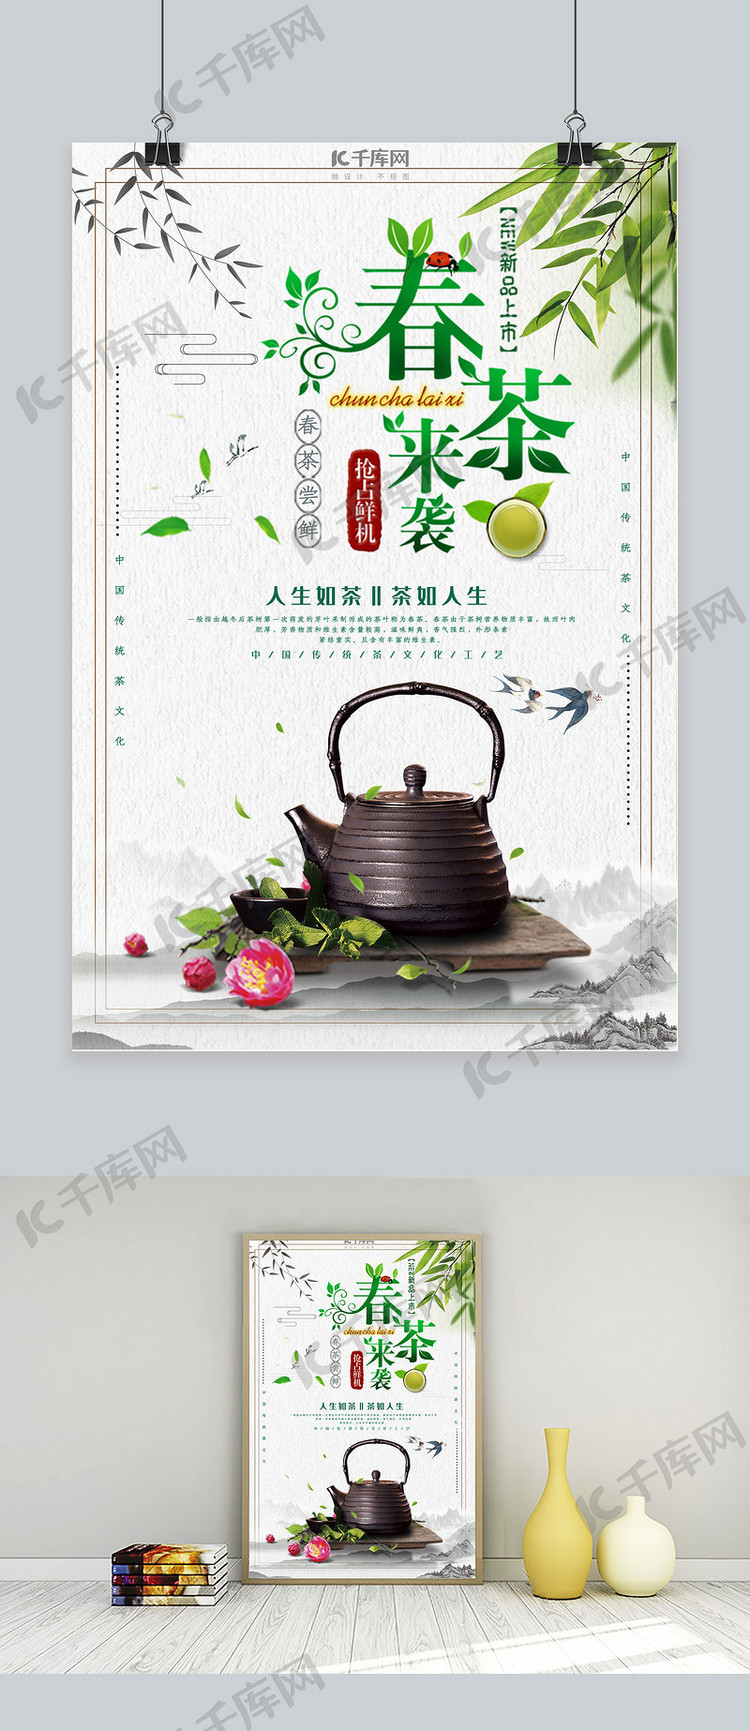 中国传统春茶节宣传海报